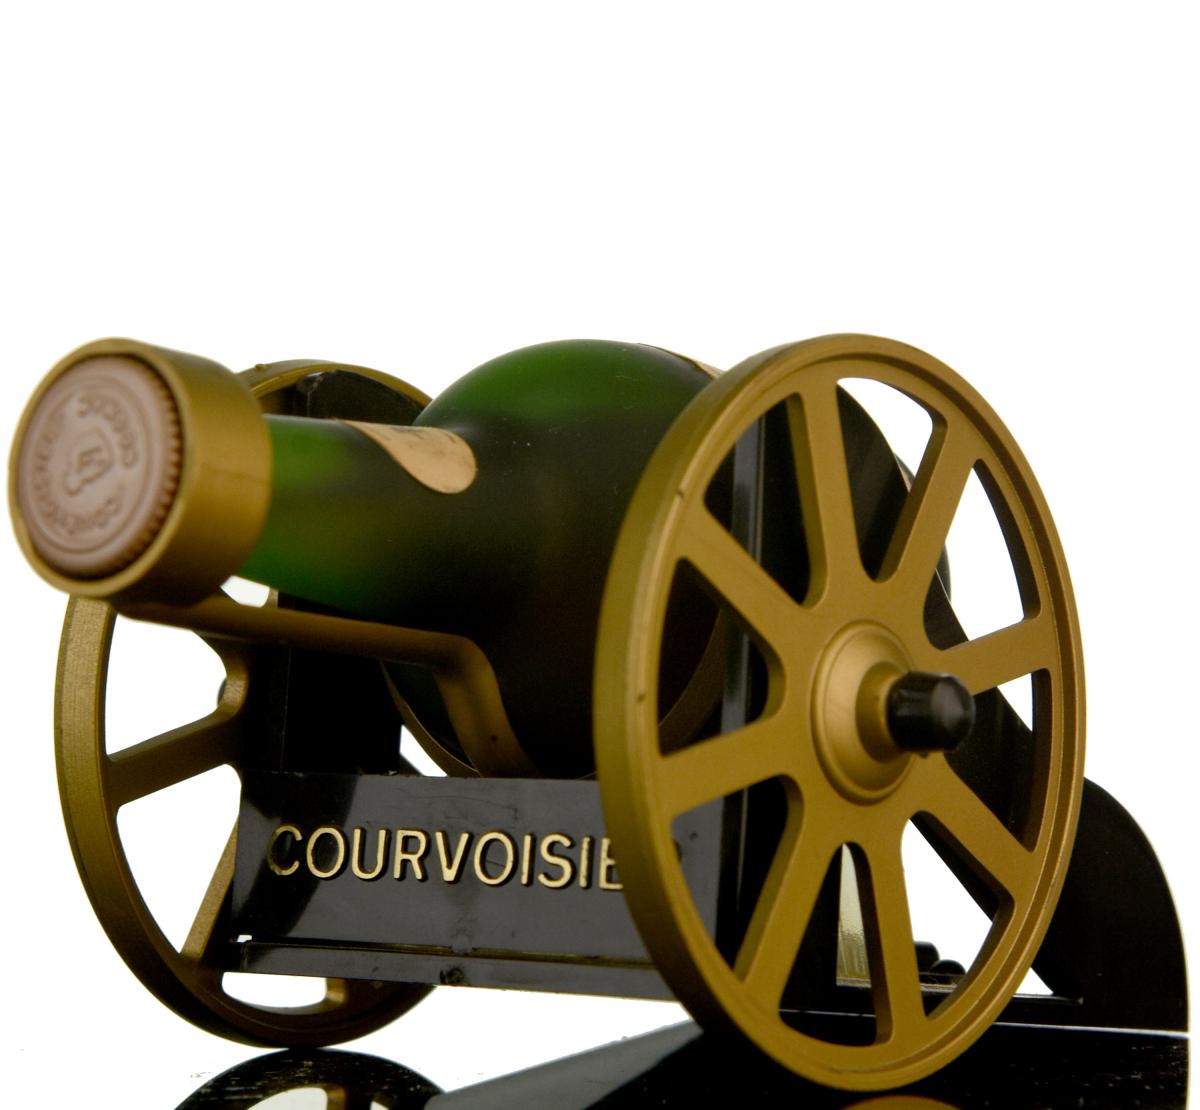 Courvoisier Miniature Cannon